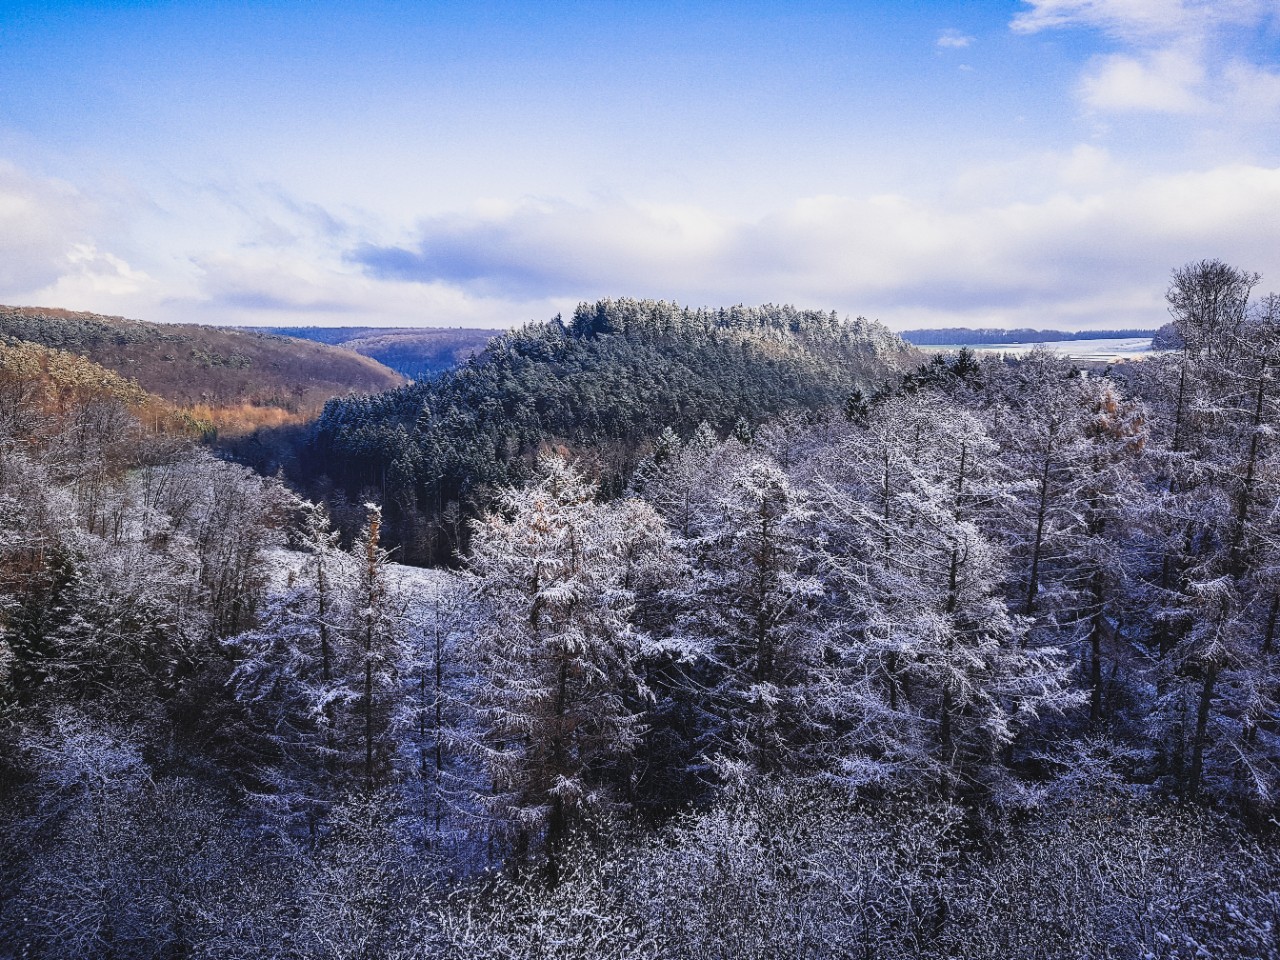 Le parc naturel de la Haute-Sûre dans les Ardennes luxembourgeoises fascine par ses vues spectaculaires et son environnement intact. En été comme en hiver, des randonnées et des activités sportives vous invitent à la découverte.